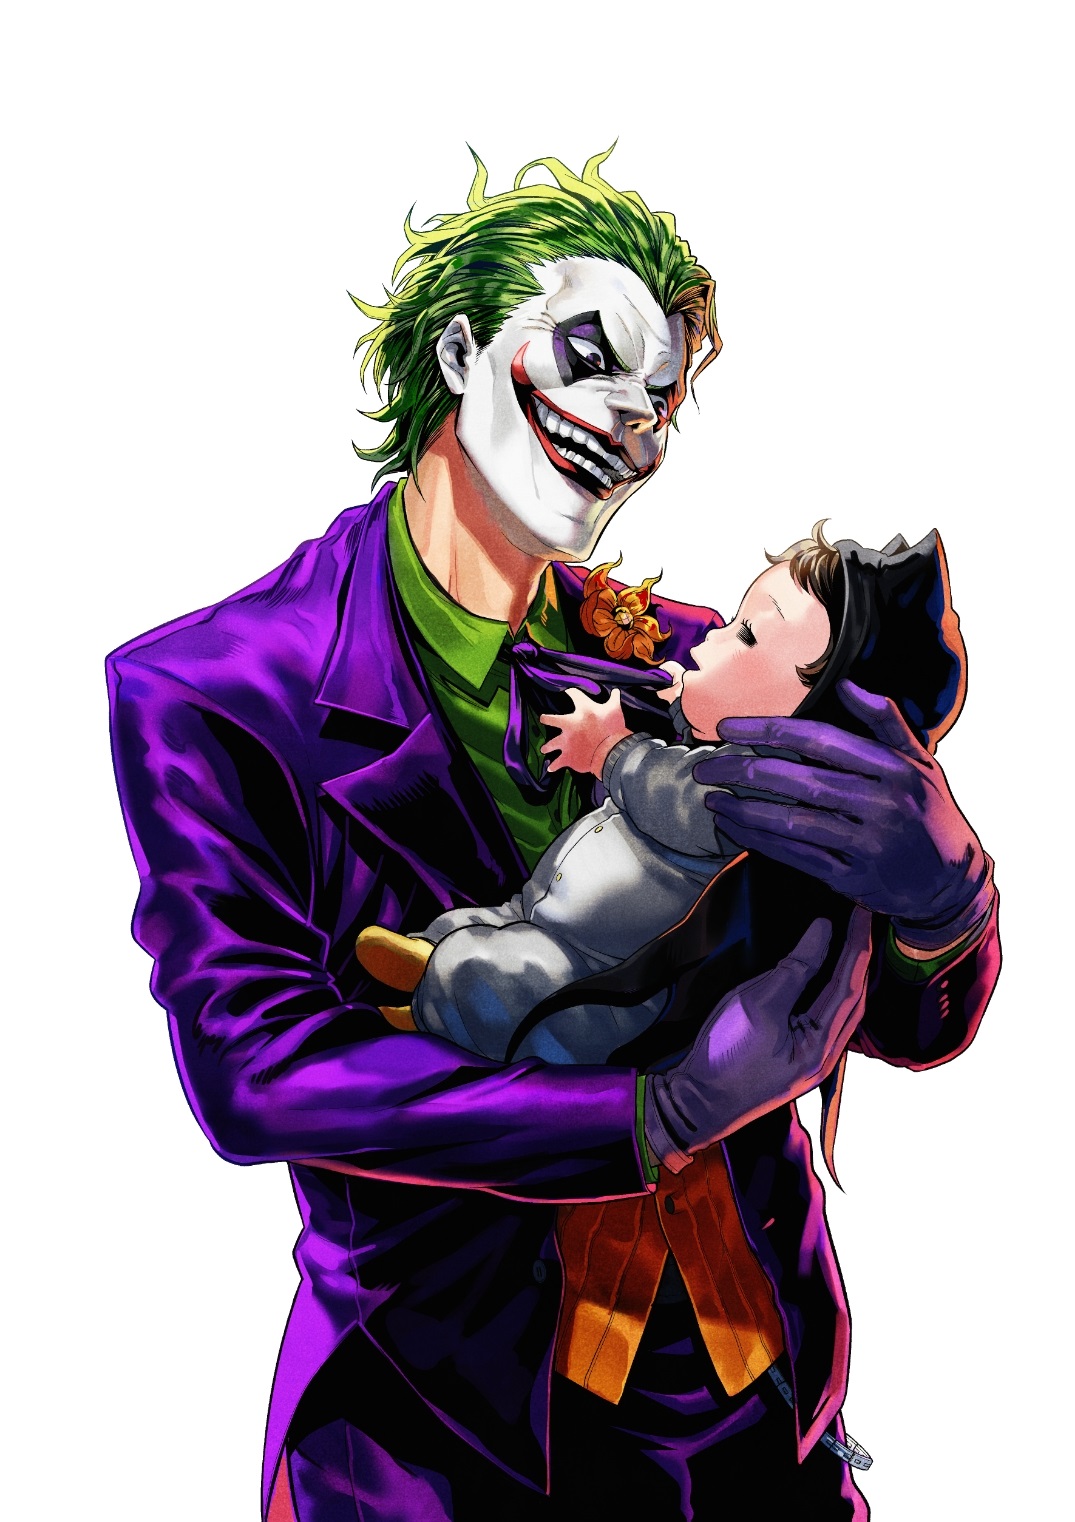 Crunchyroll - DC Comics publicará nuevos manga de Batman y el Joker en Japón